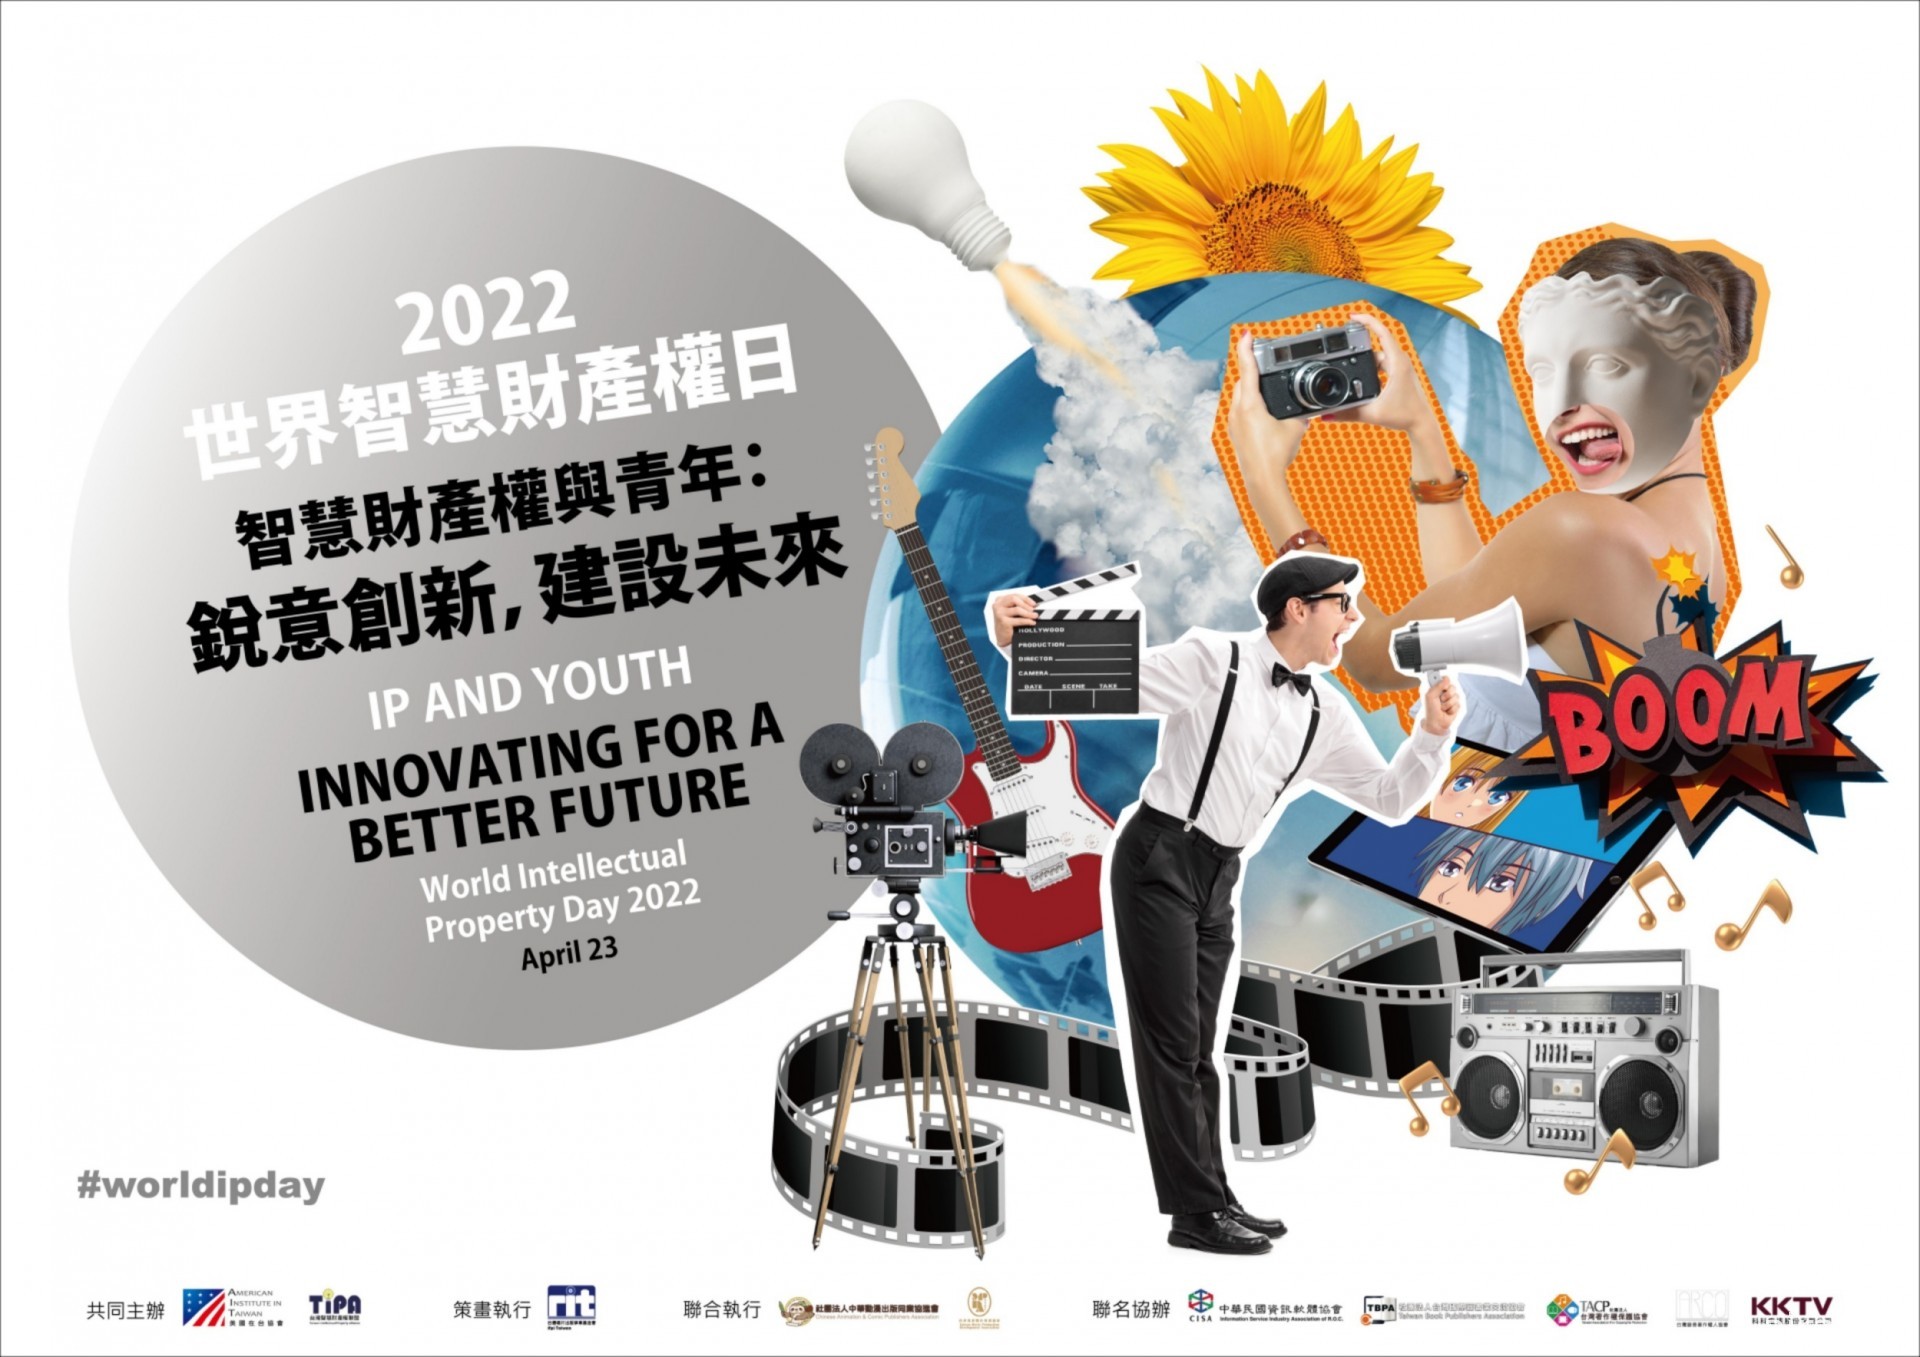 “2022 World IP Day 庆祝活动”将邀霹雳总经理、电影导演李世伟等人举办演讲分享经历